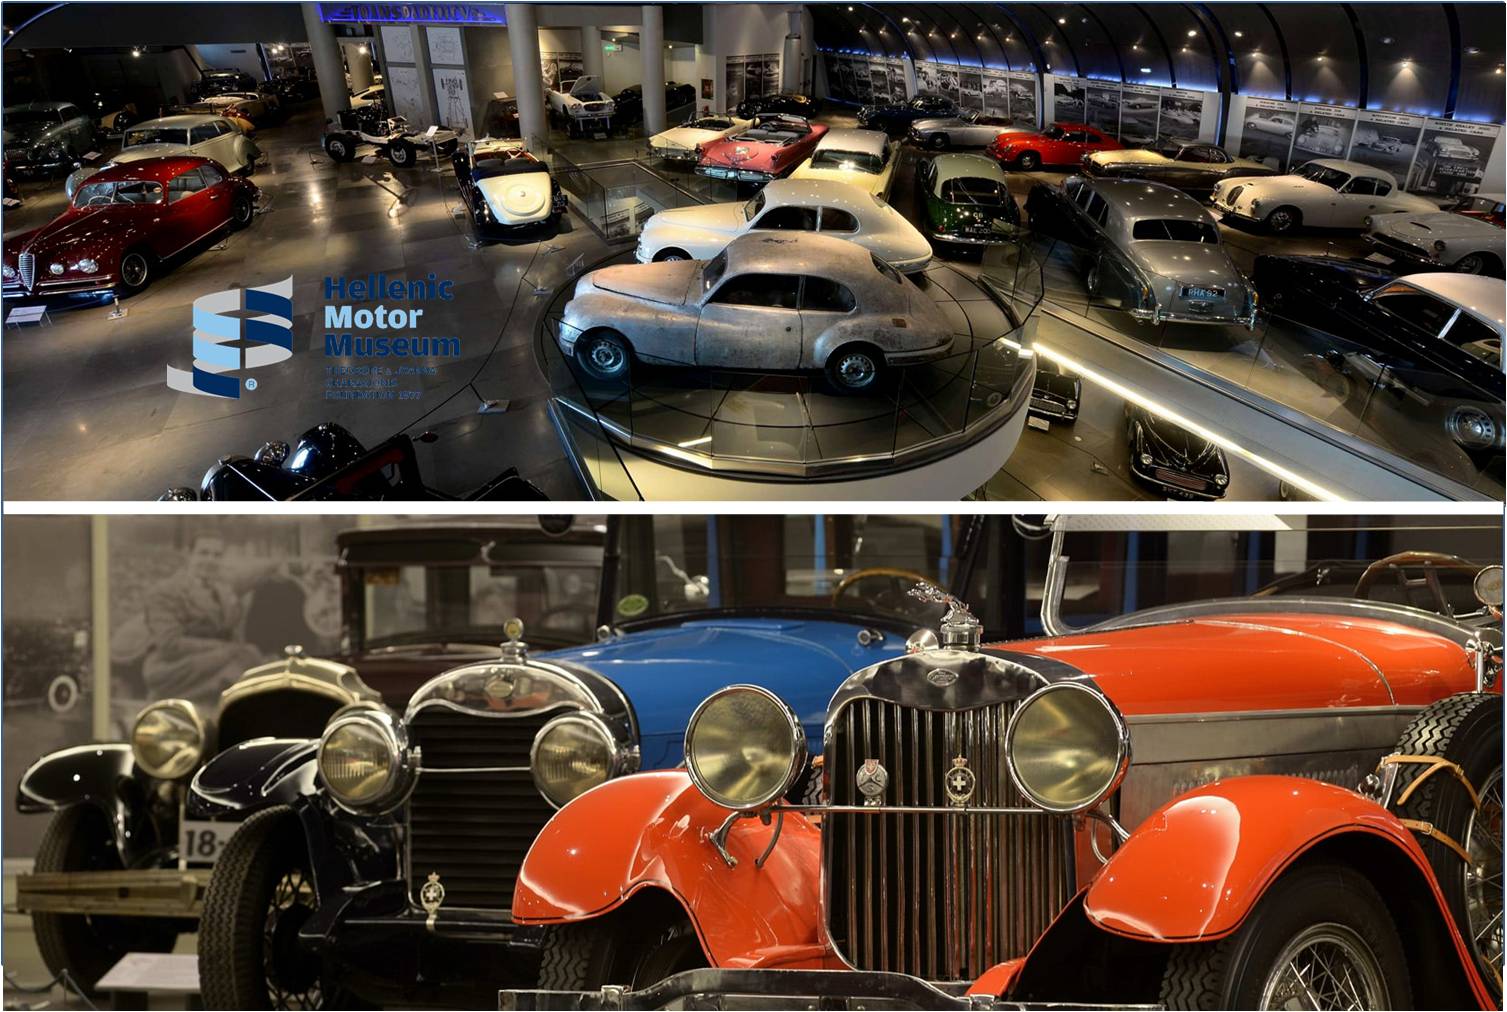 Από 4€ για είσοδο στο ''Ελληνικό Μουσείο Αυτοκινήτου'', αφιερωμένο στην τεχνολογία και στην εξέλιξη του αυτοκινήτου, με περισσότερα από 110 εκθέματα. Επιπρόσθετα οδηγήστε στον ΠΡΟΣΟΜΟΙΩΤΗ της F1 του μουσείου με μόνο 4€!